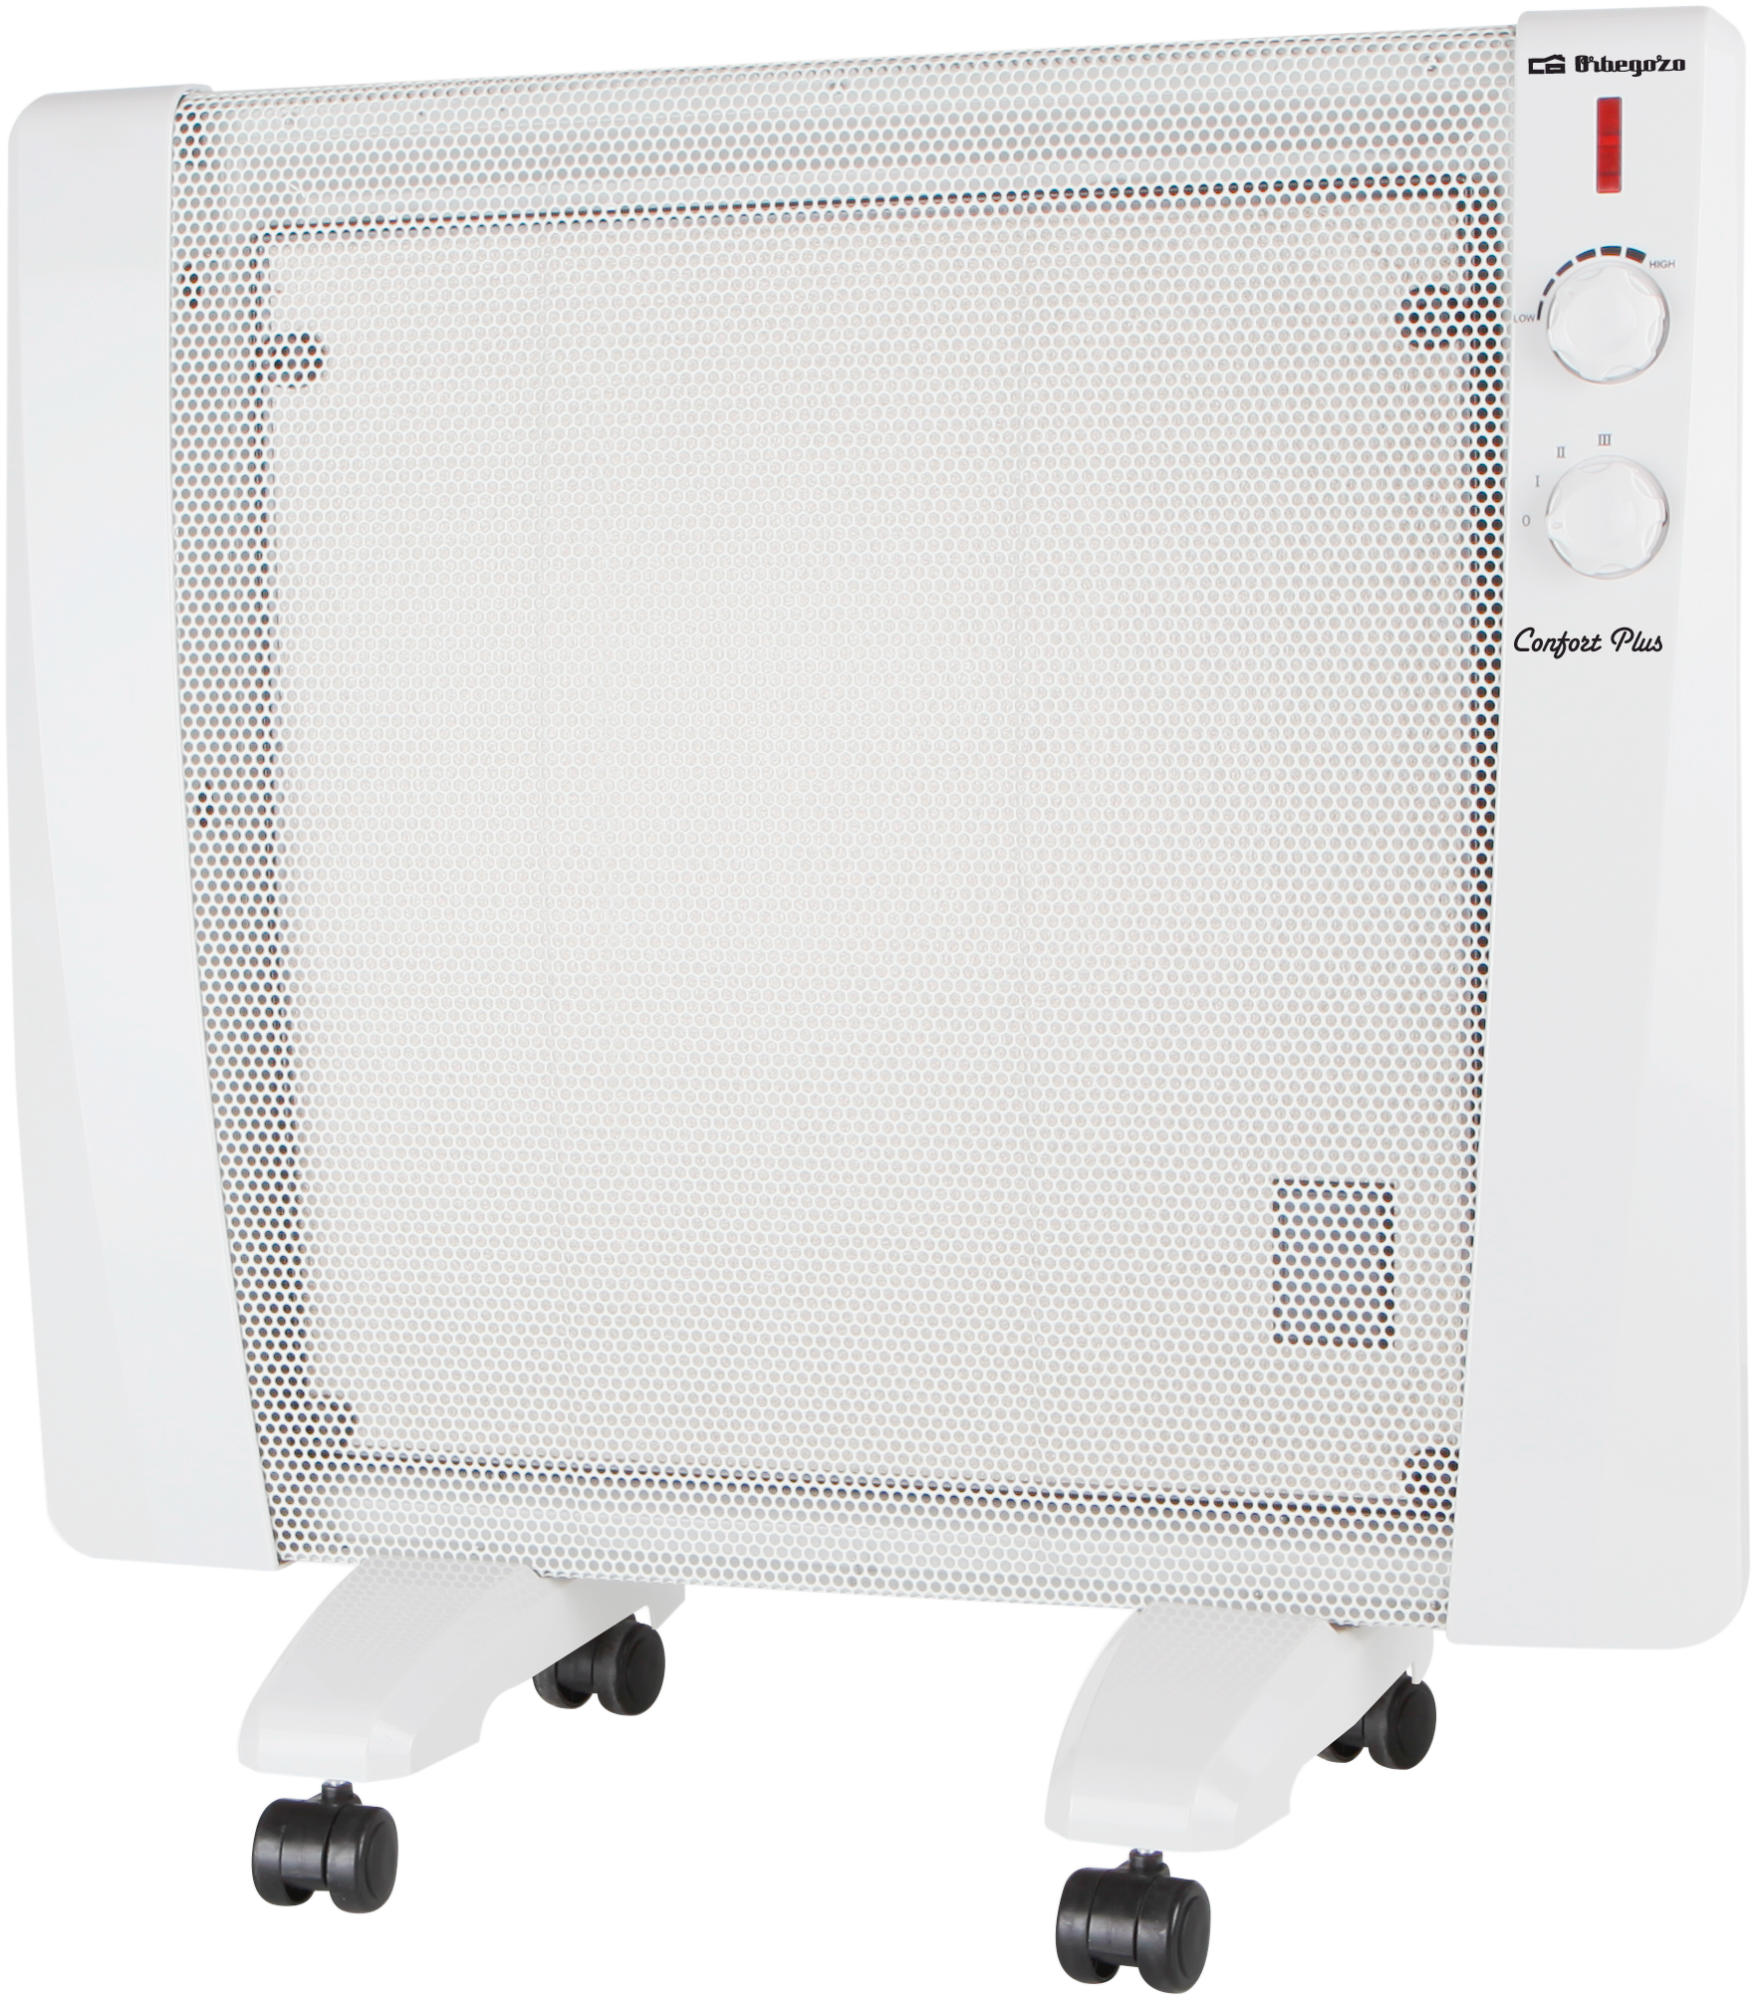 Orbegozo Rm 1000 blanco 1000w radiador calefactor de potencia tecnología micasystem 3 niveles calor radiadoremisor sin fluido contra sobrecalentamiento rm1000